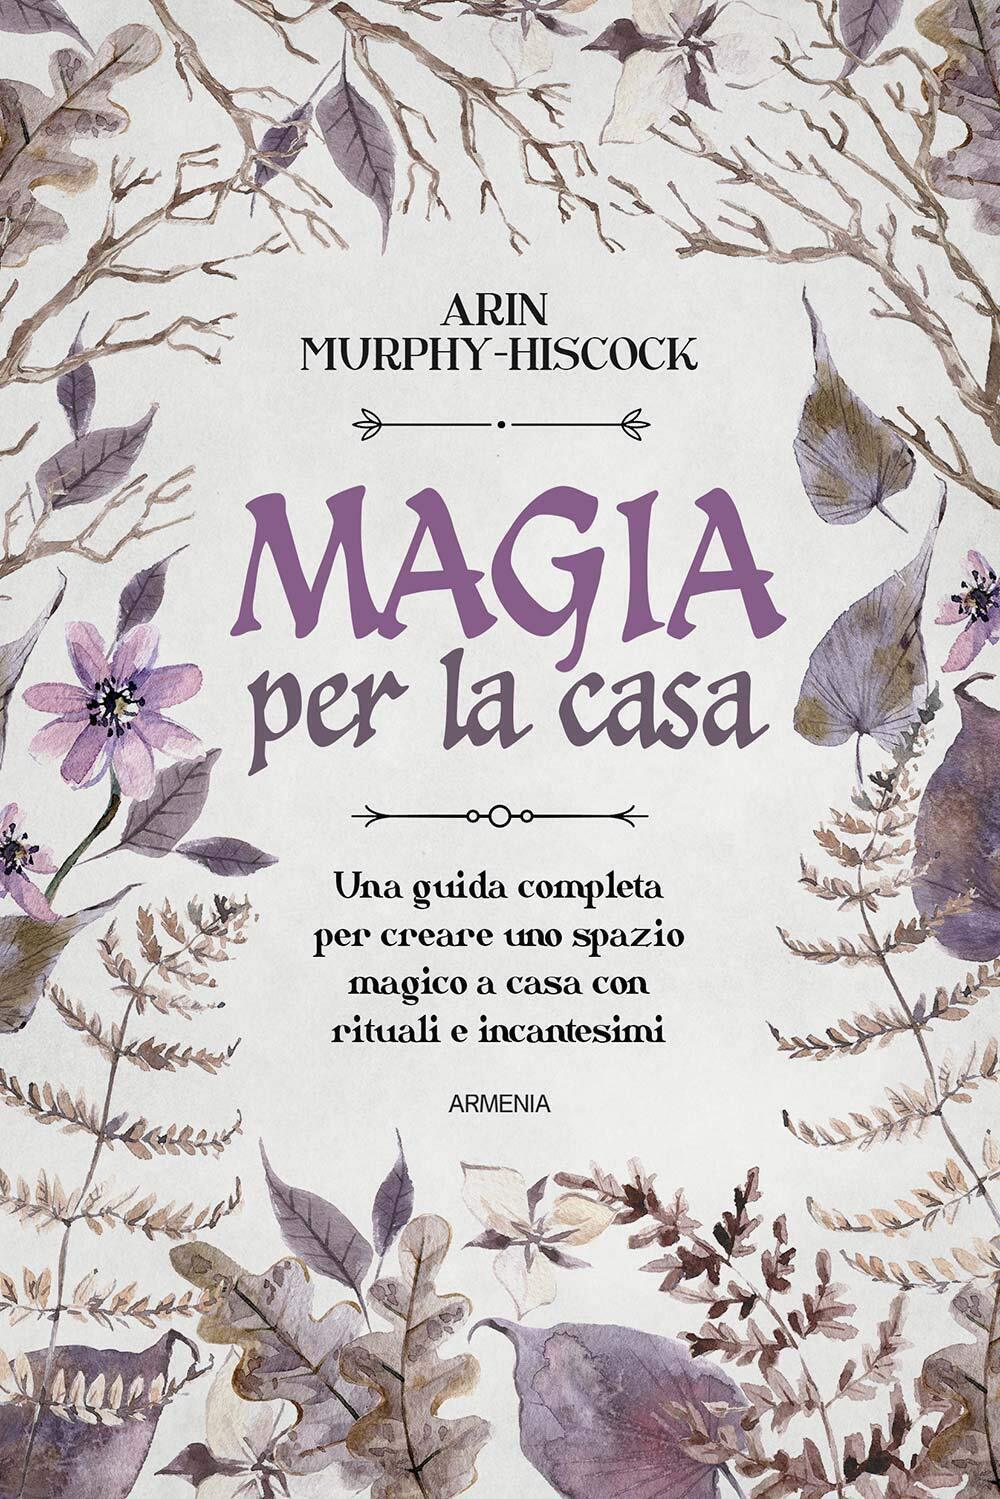 Magia per la casa - Arin Murphy-Hiscock - Armenia, 2021 libro usato